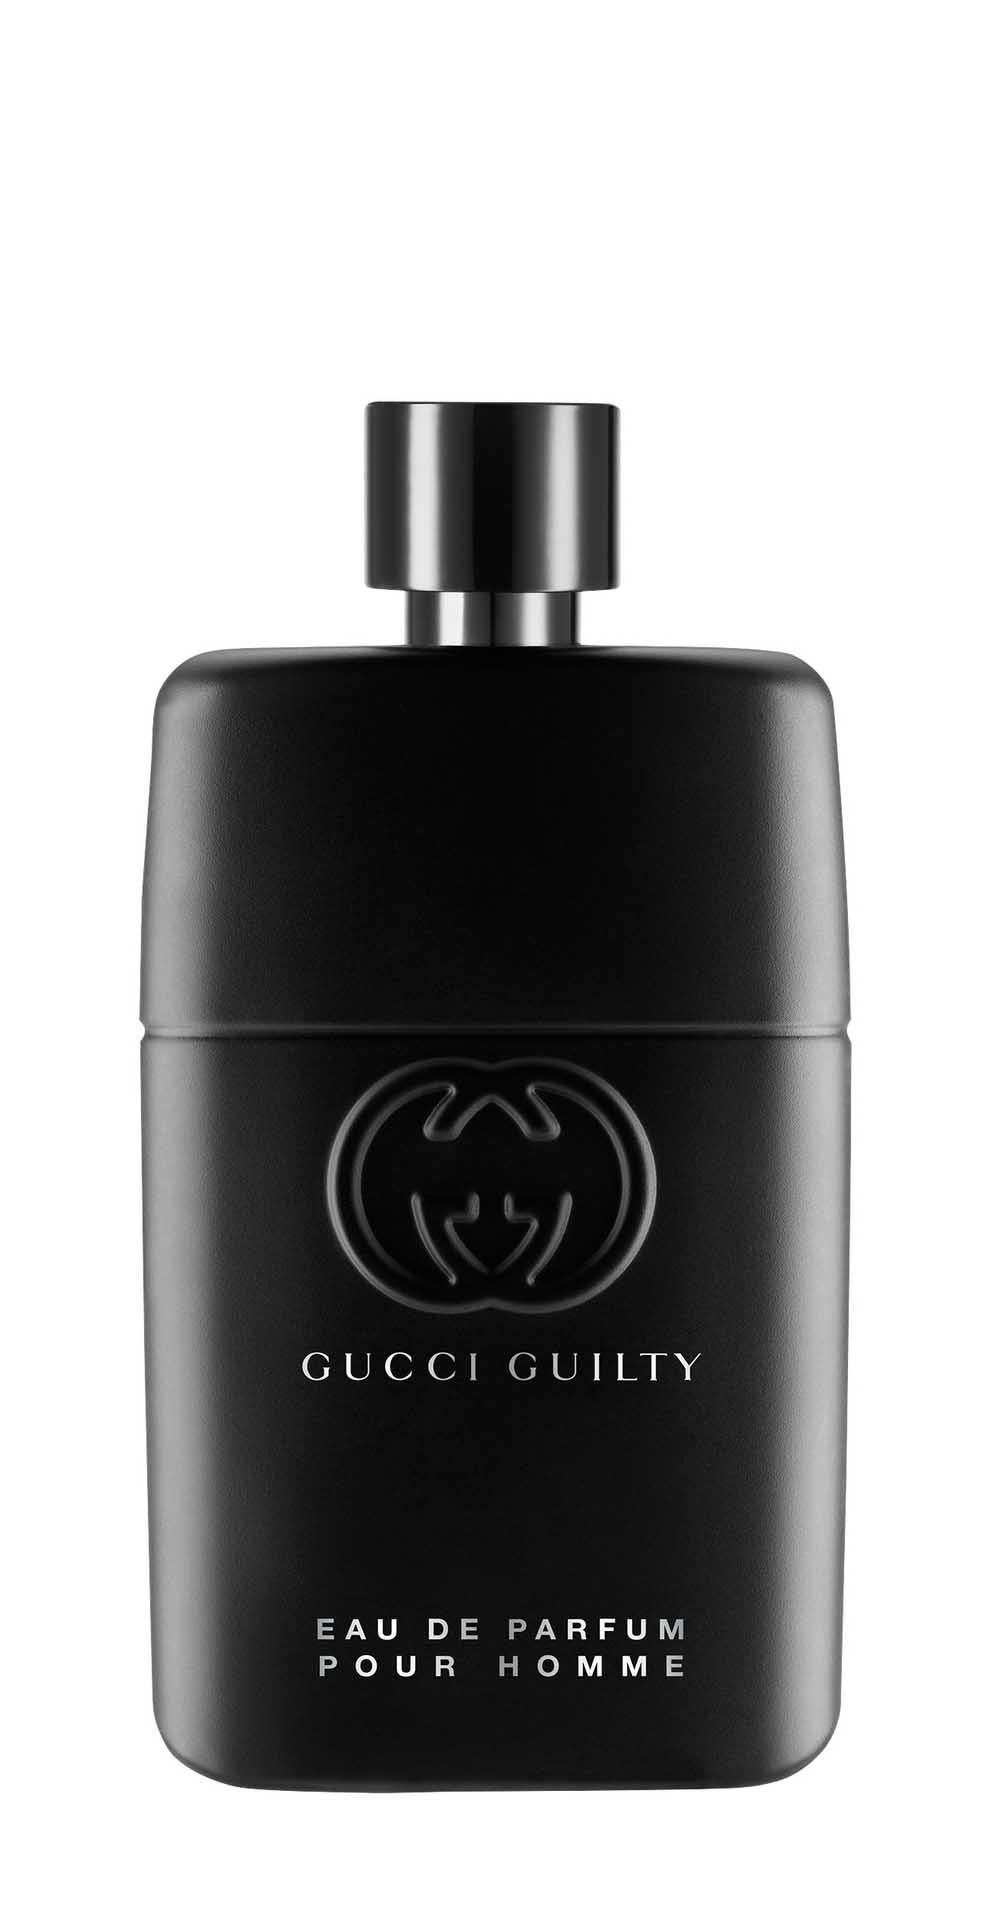 Парфюмерная вода Gucci Guilty Pour Homme Eau de Parfum для мужчин, 90 мл